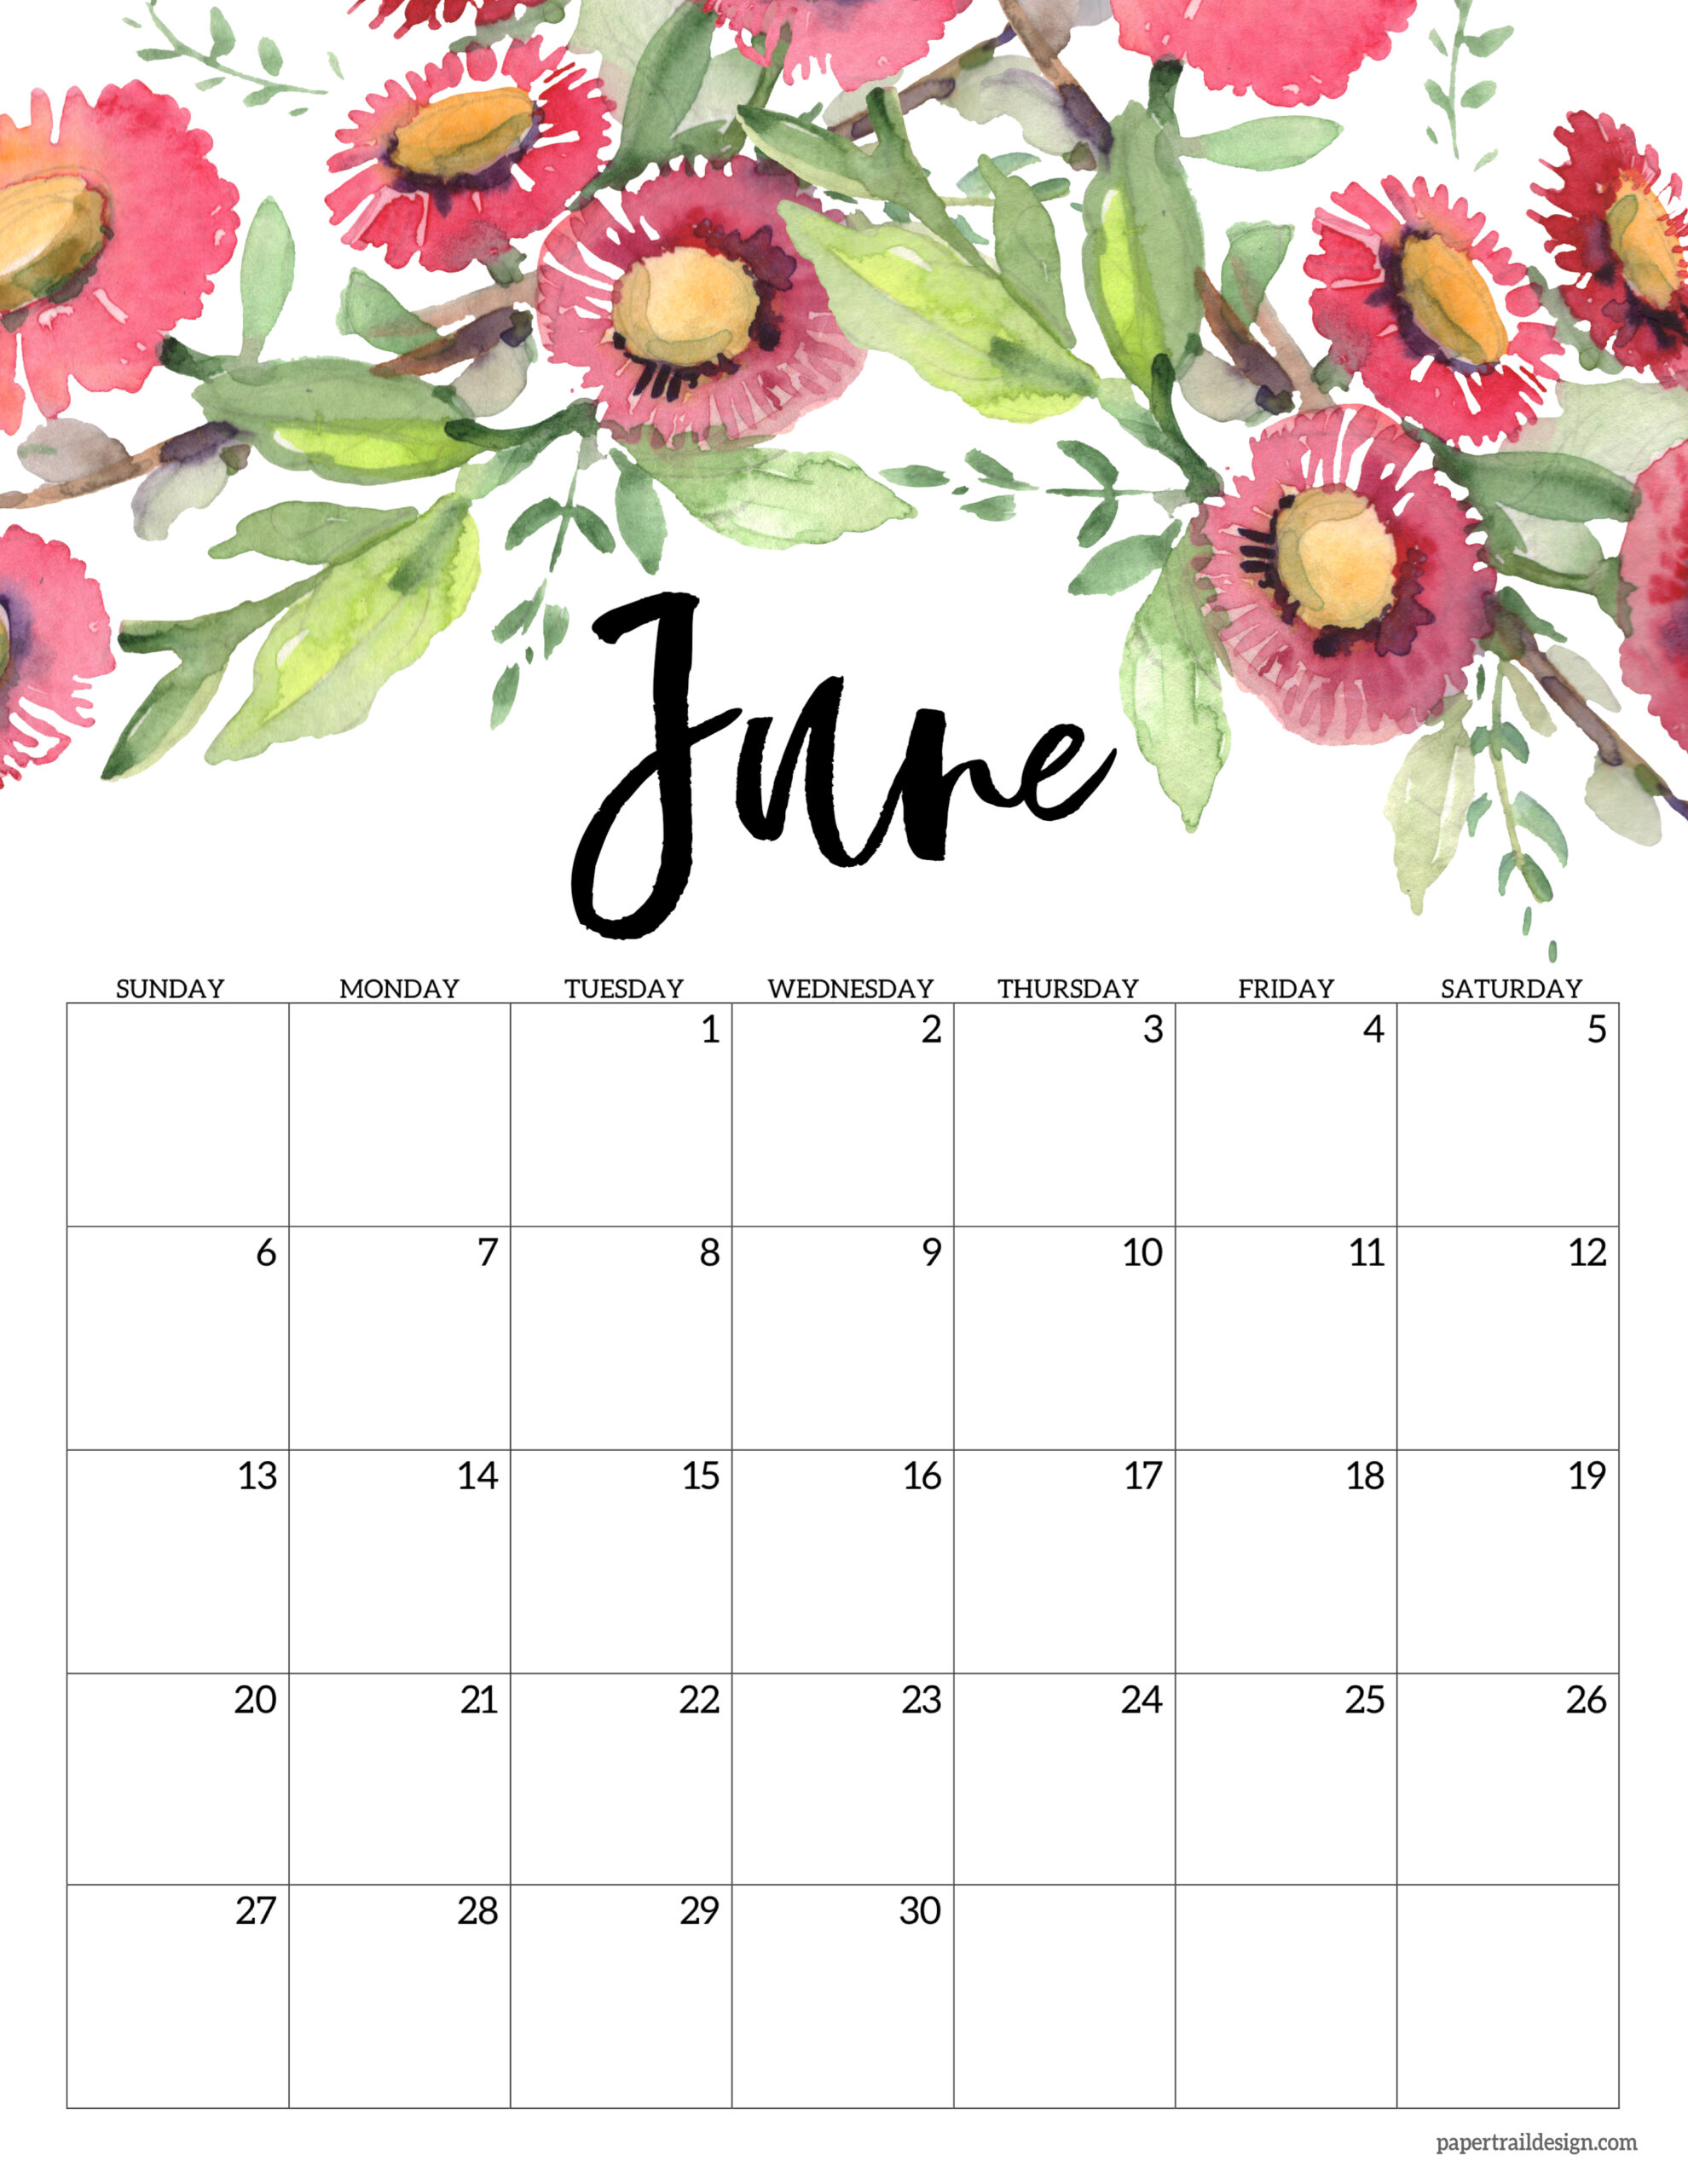 Kalender julai 2021